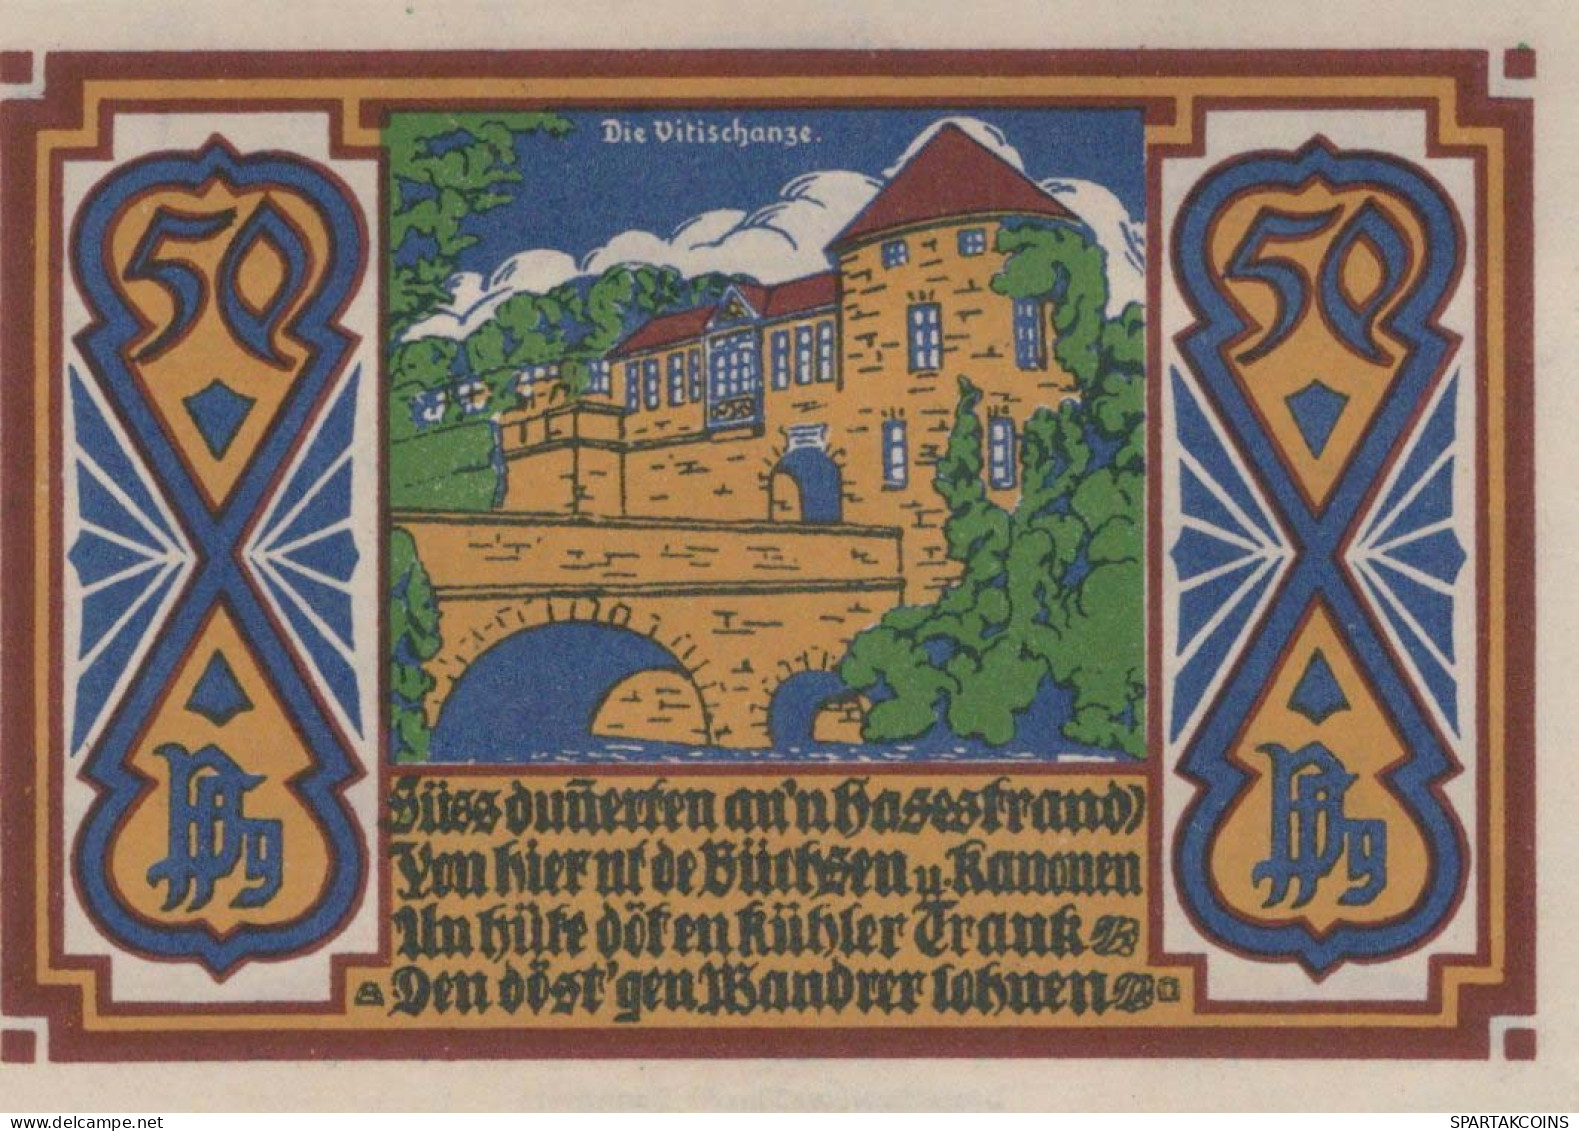 50 PFENNIG 1921 Stadt OSNABRÜCK Hanover UNC DEUTSCHLAND Notgeld Banknote #PI829 - [11] Local Banknote Issues